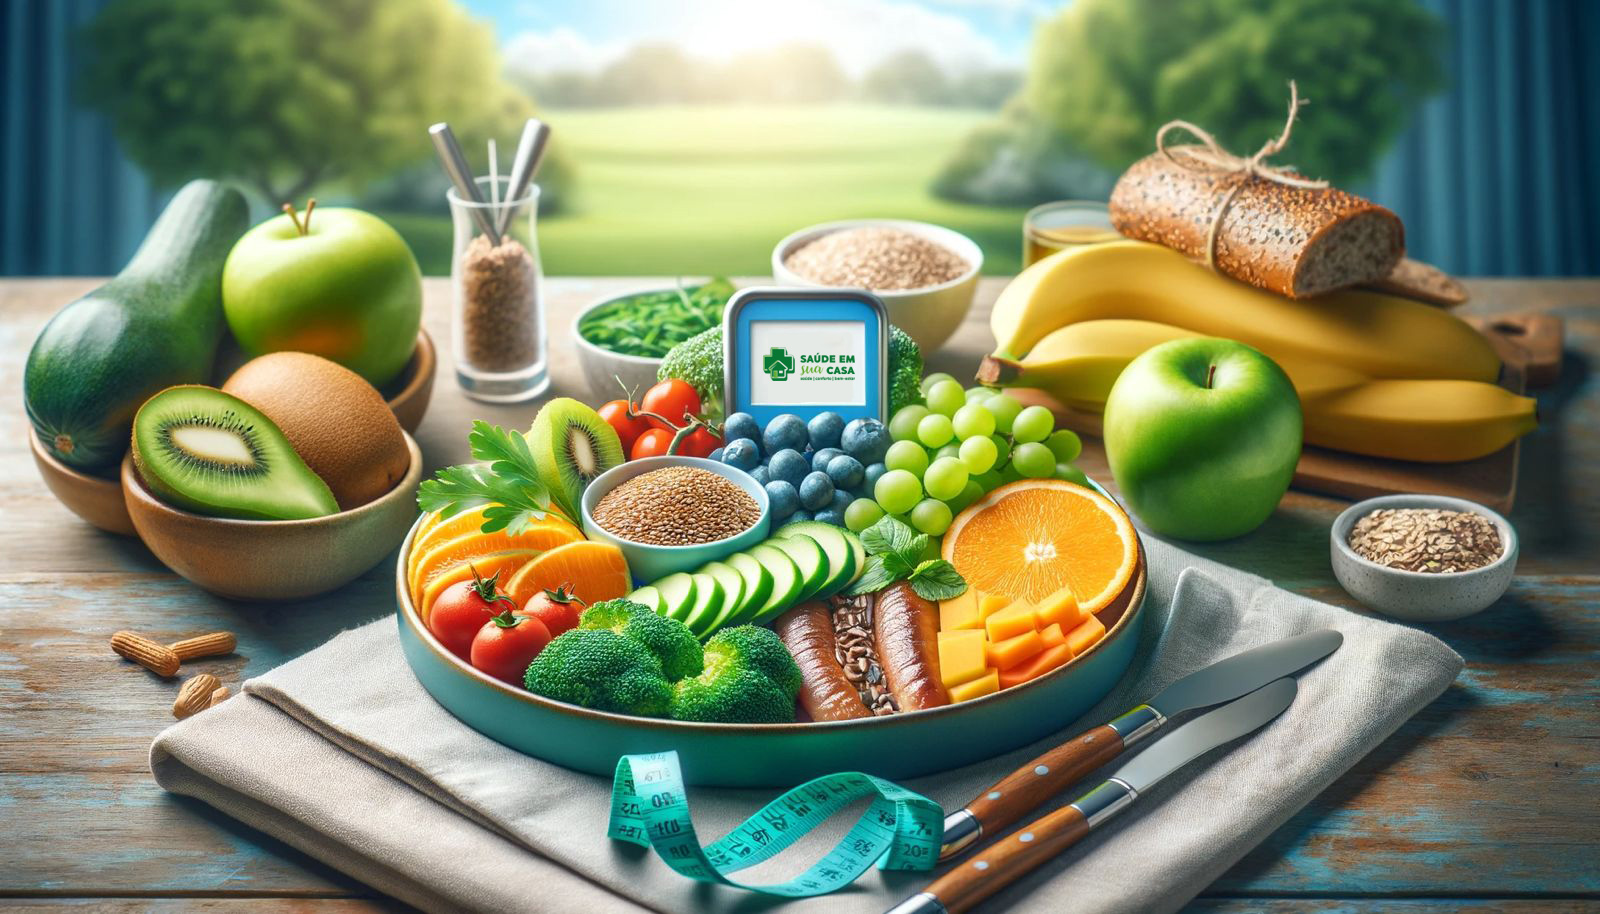 Conceito de alimentação saudável com frutas frescas, vegetais, grãos integrais e uma fita métrica sobre uma mesa com um campo verde ao fundo.